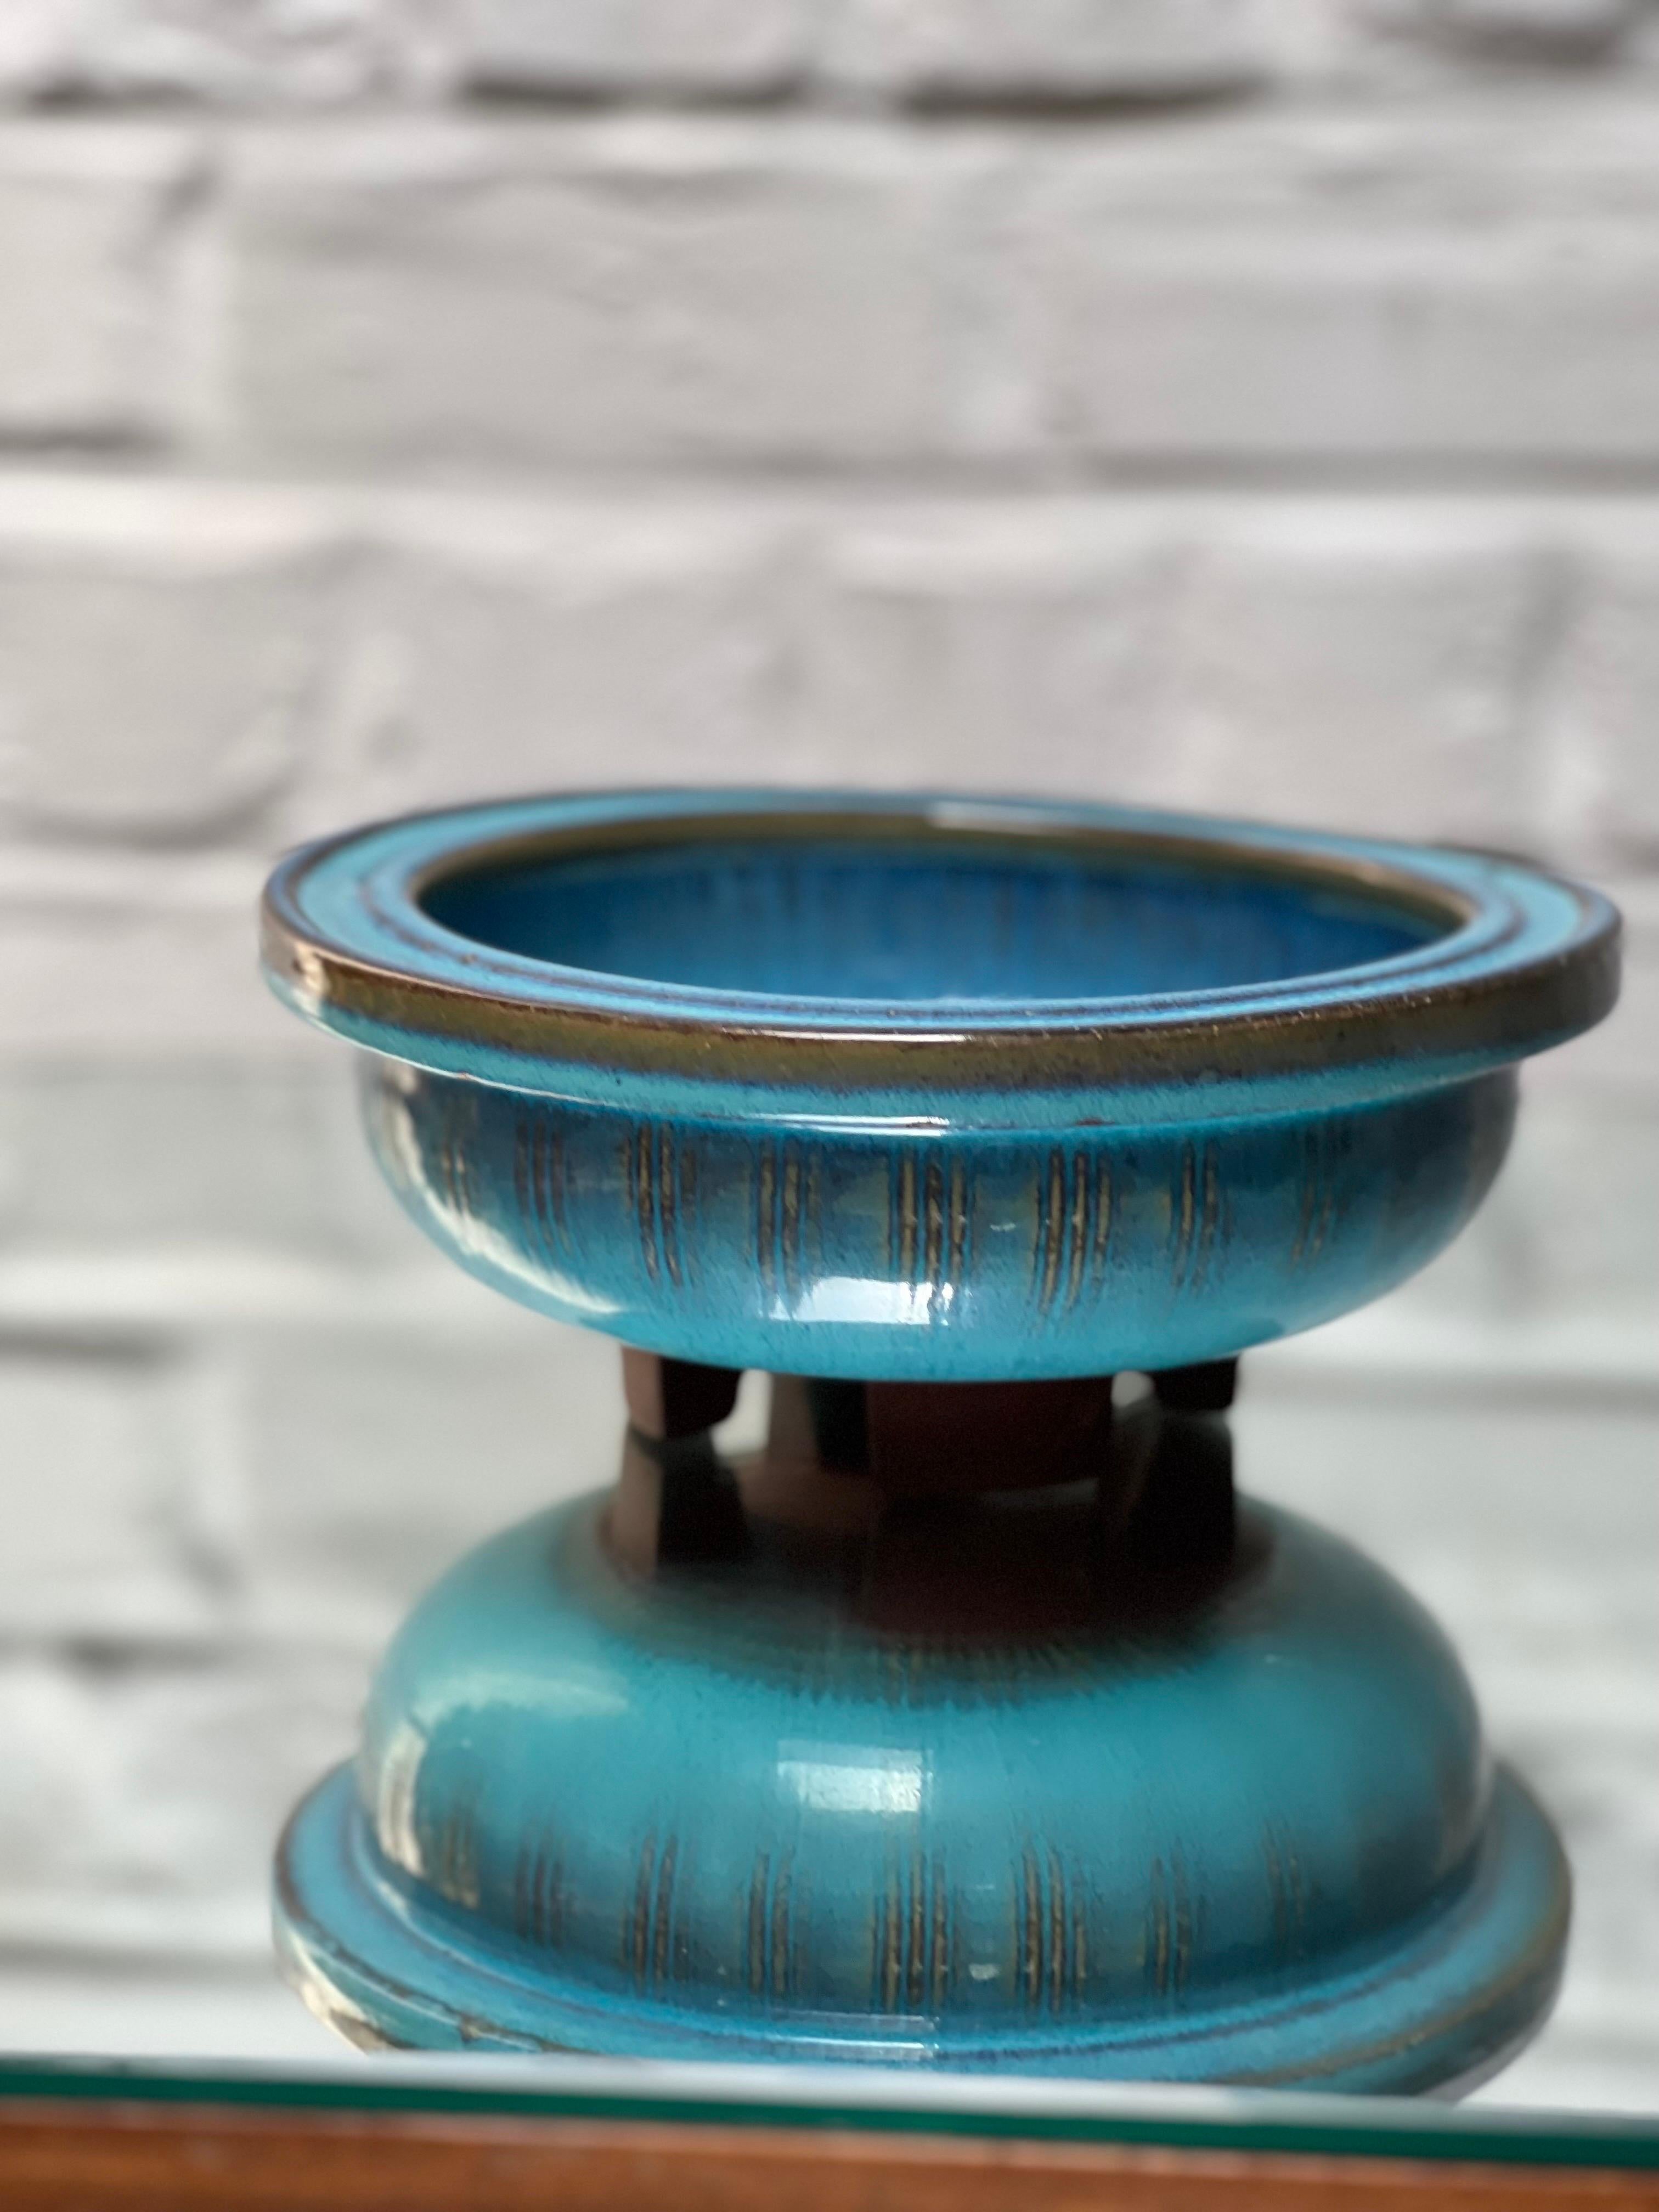 Schale mit kräftiger blauer Glasur des Keramikmeisters Wilhelm Kage, der 30 Jahre an seinem Farsta-Projekt gearbeitet hat. Dies ist eine seiner einzigartigen Kreationen. Schale auf 4 kleinen Füßen. Inspiriert von der traditionellen japanischen